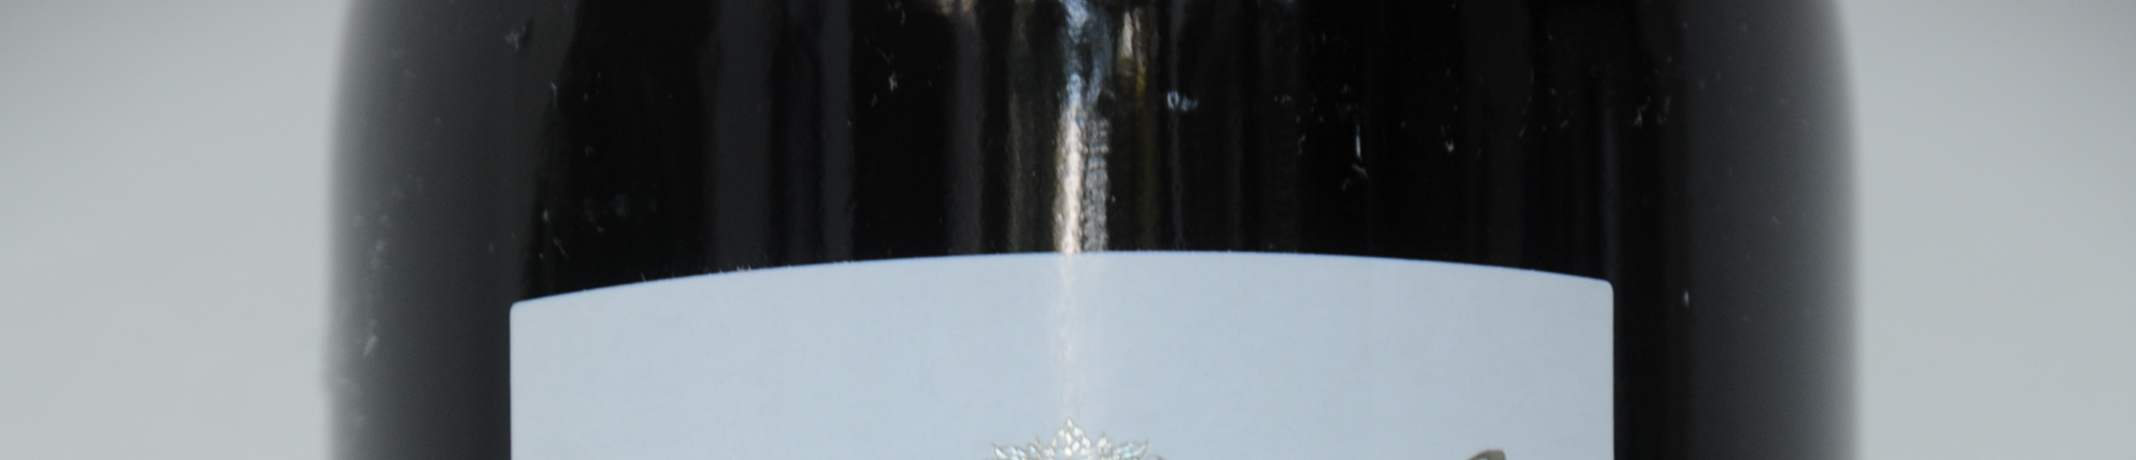 Les Futailles Wijn 1 Cabernet Gernischt blend Kruising van Sauvignon en Franc 2010 Changyu